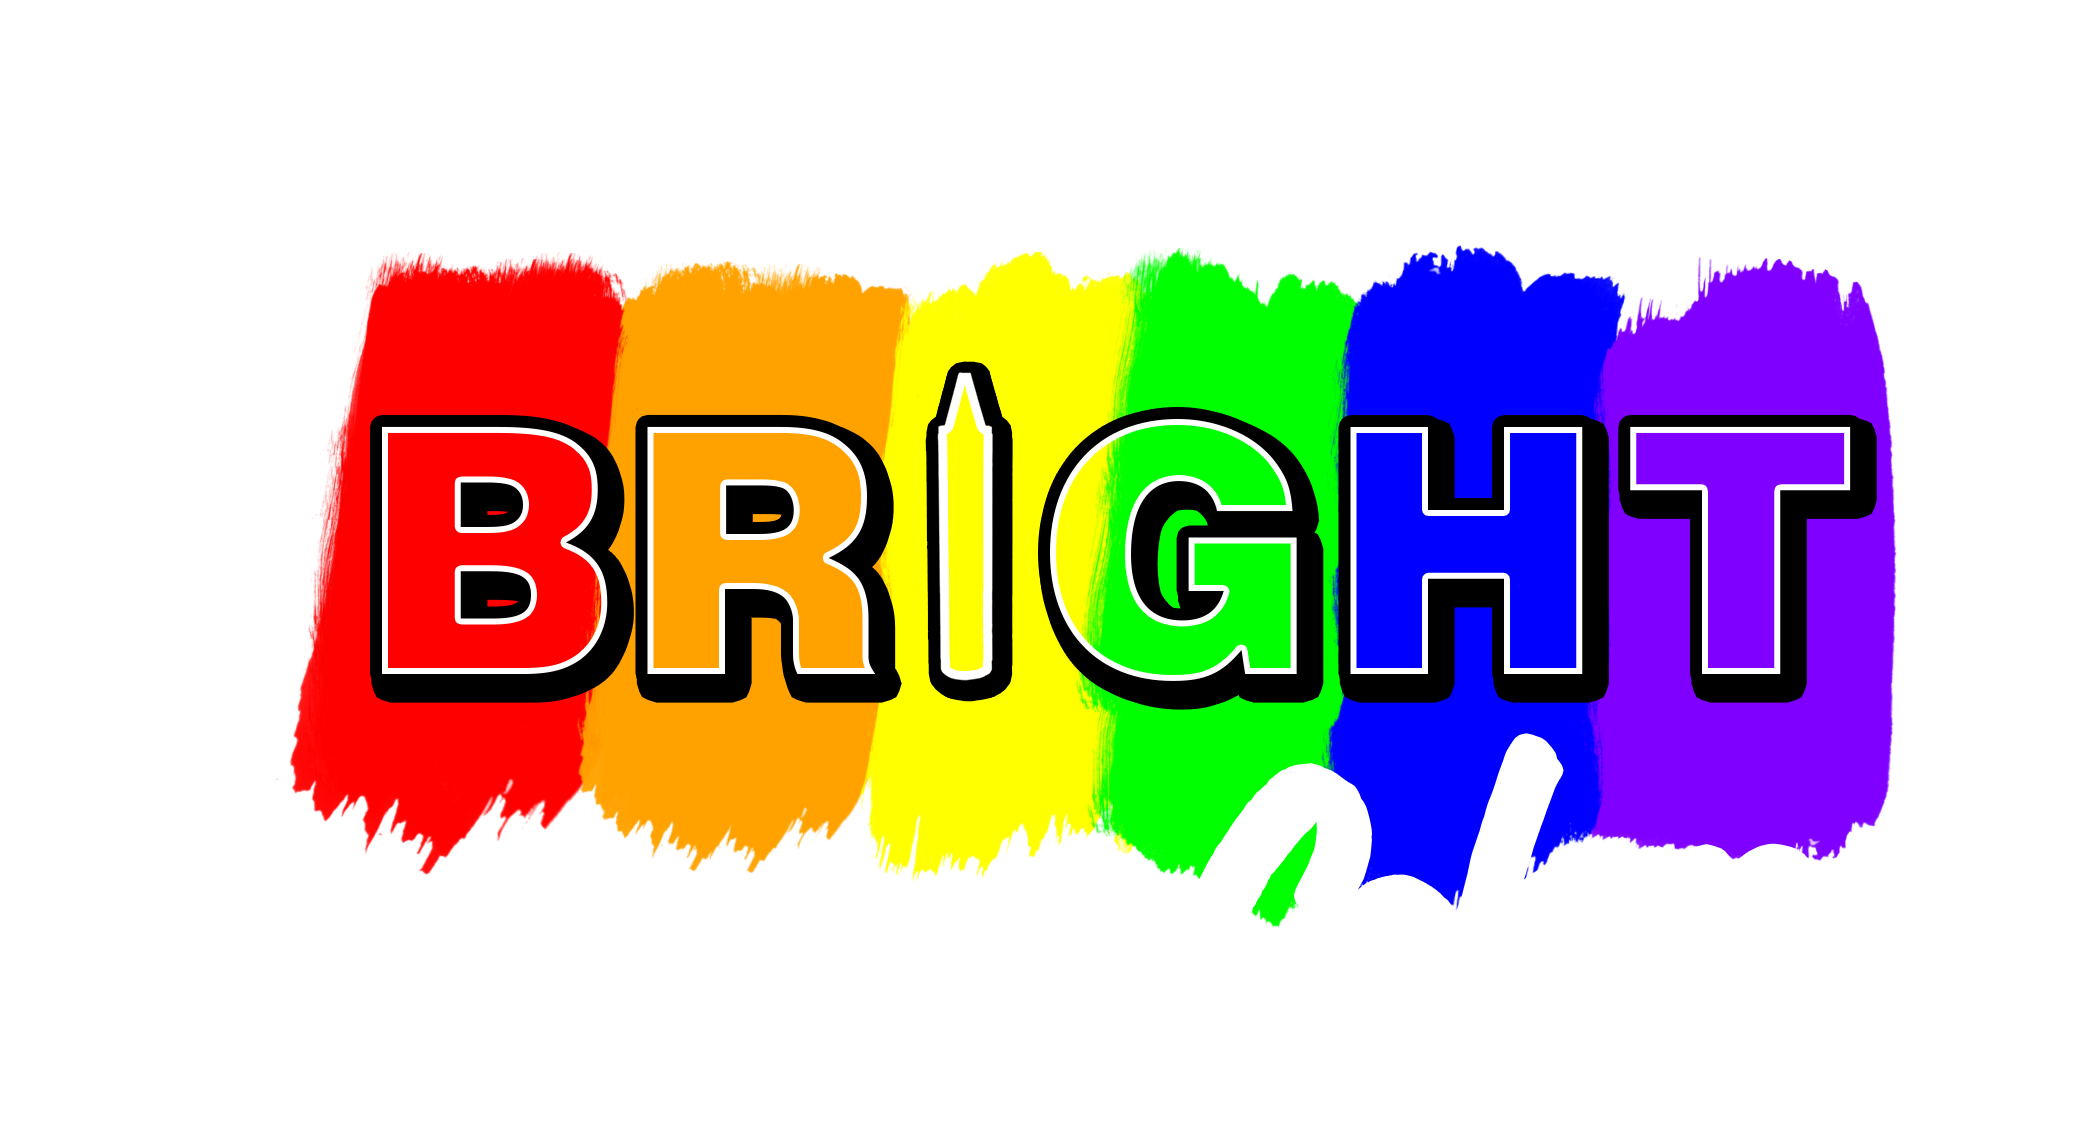 Bright Colors